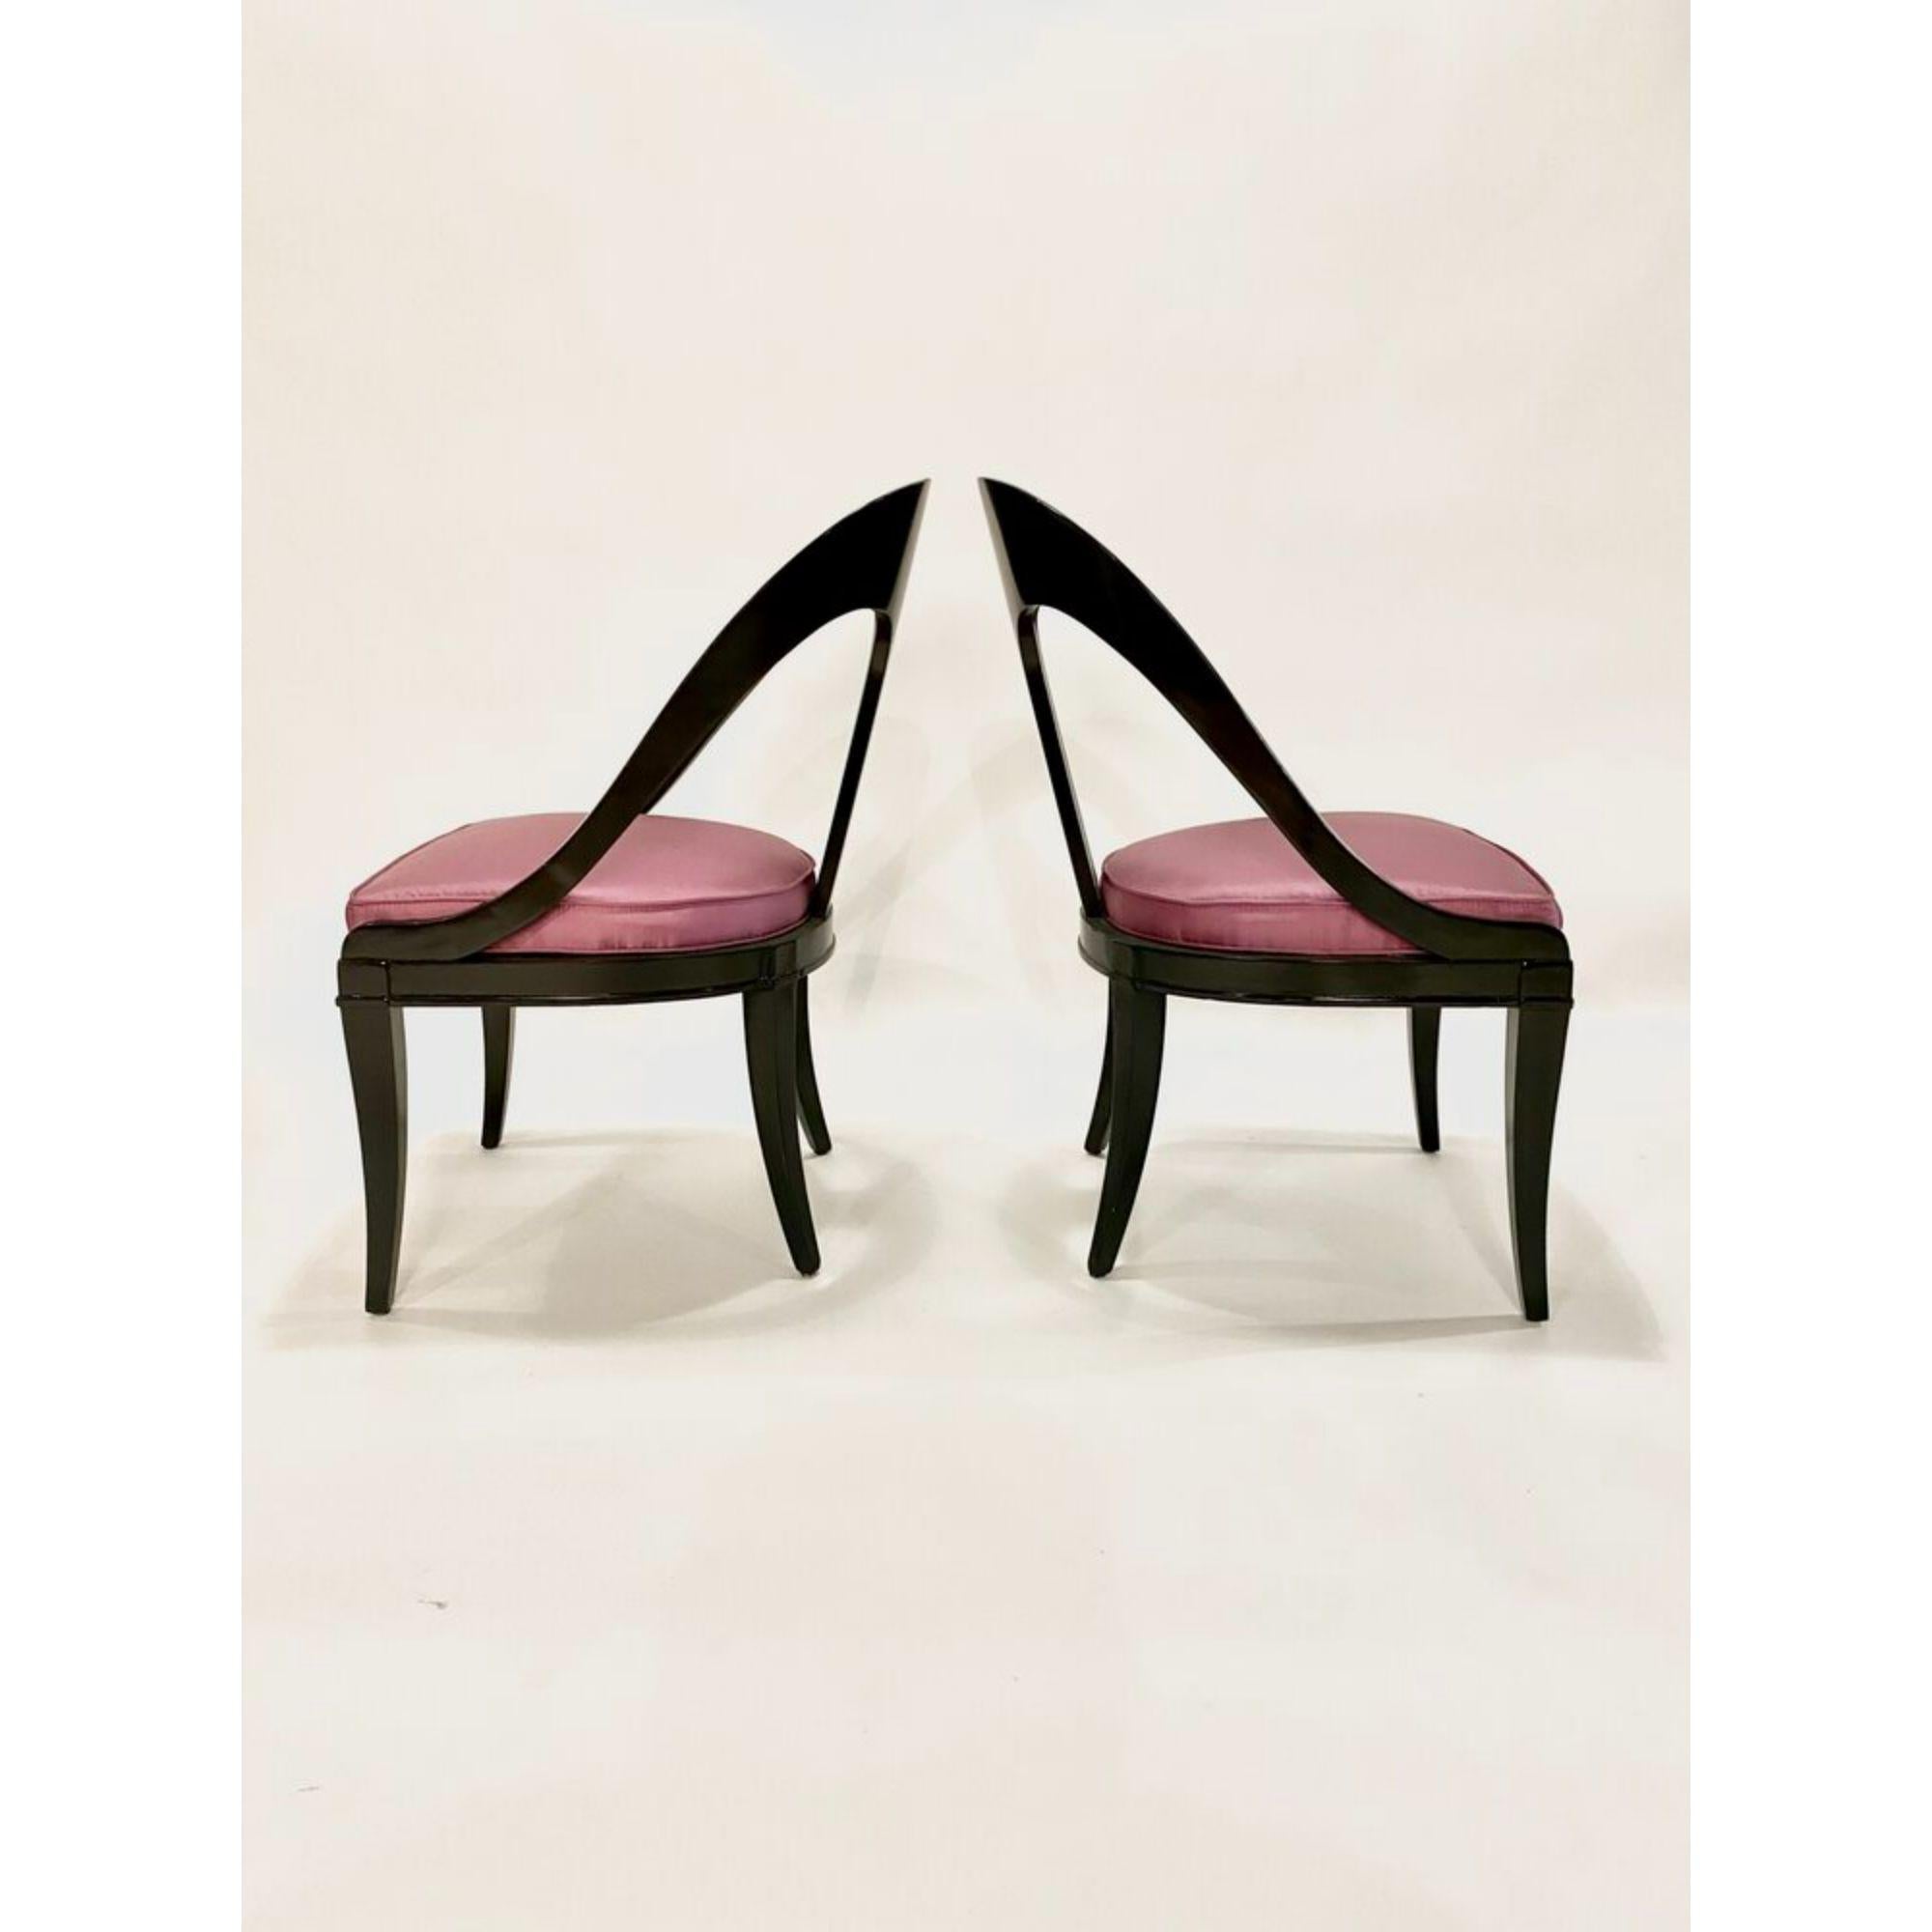 Ein Paar Löffelstühle im neoklassischen Design aus der Mitte des Jahrhunderts im Stil von Michael Taylor mit schwarz lackiertem Holzrahmen und violett gepolsterten Sitzen aus Seide.

